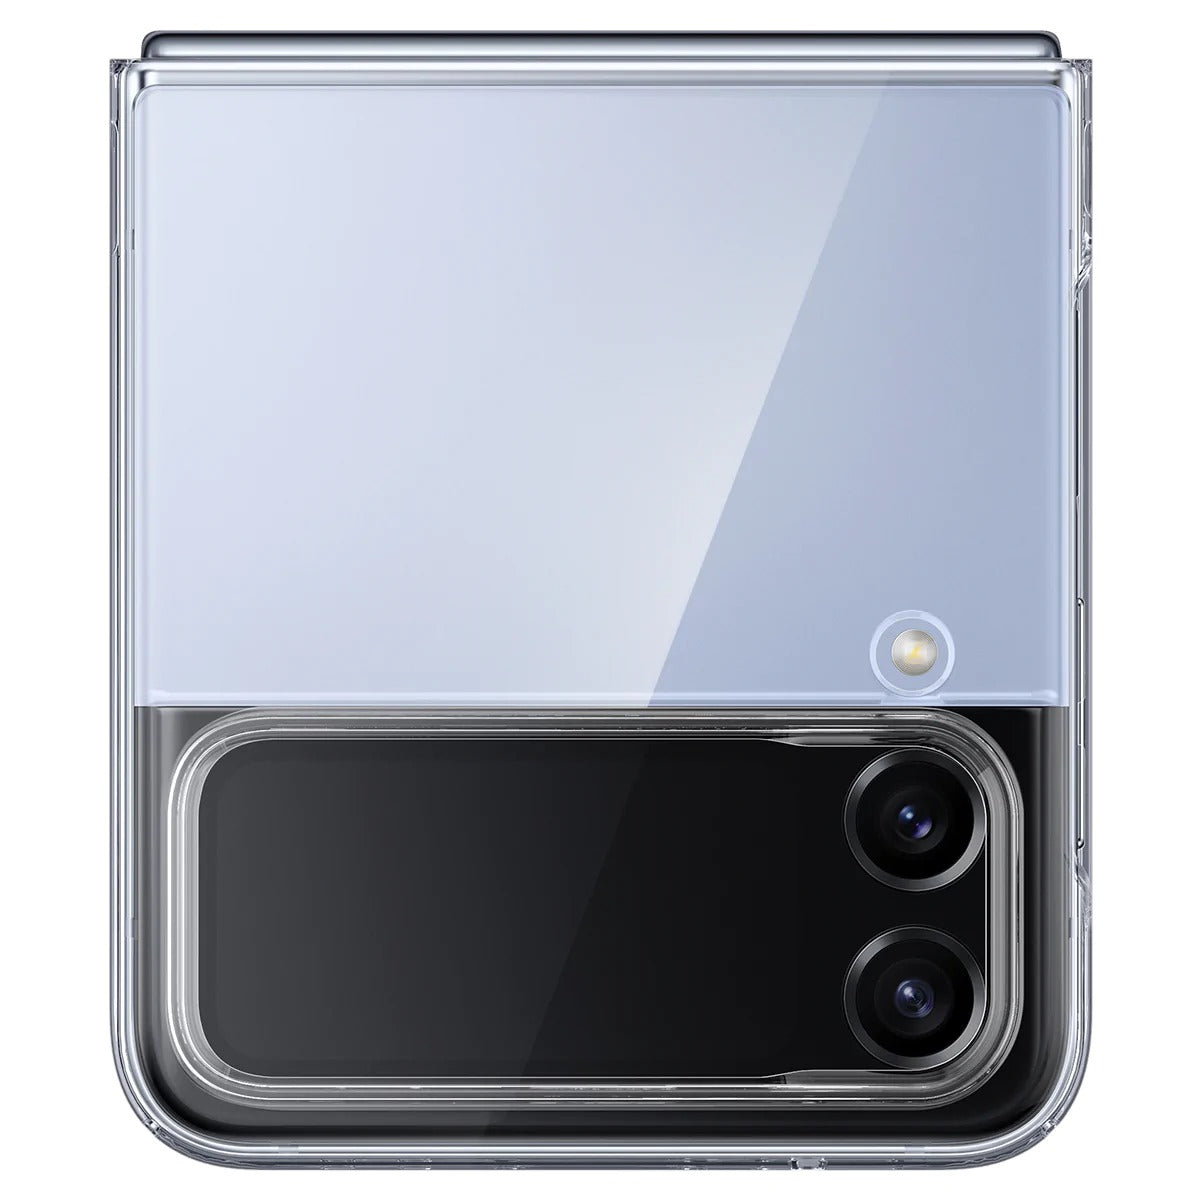 Schutzhülle Spigen Air Skin für Galaxy Z Flip4, Transparent